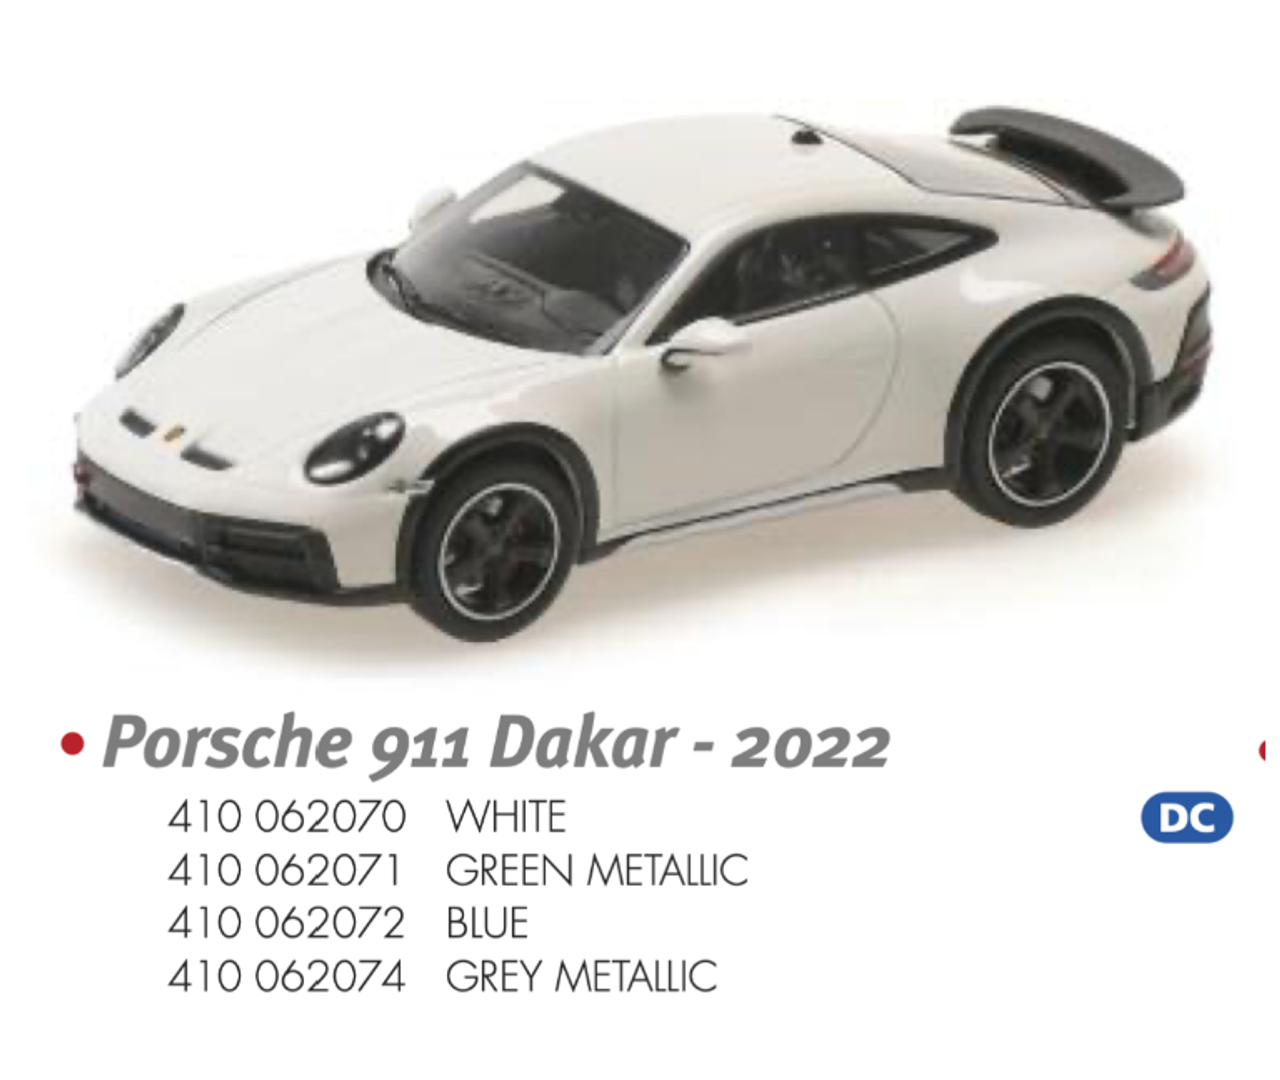 1/43 MINICHAMPS PORSCHE 911 DAKAR - 2022 - GREY METALLIC  Diecast Car Model